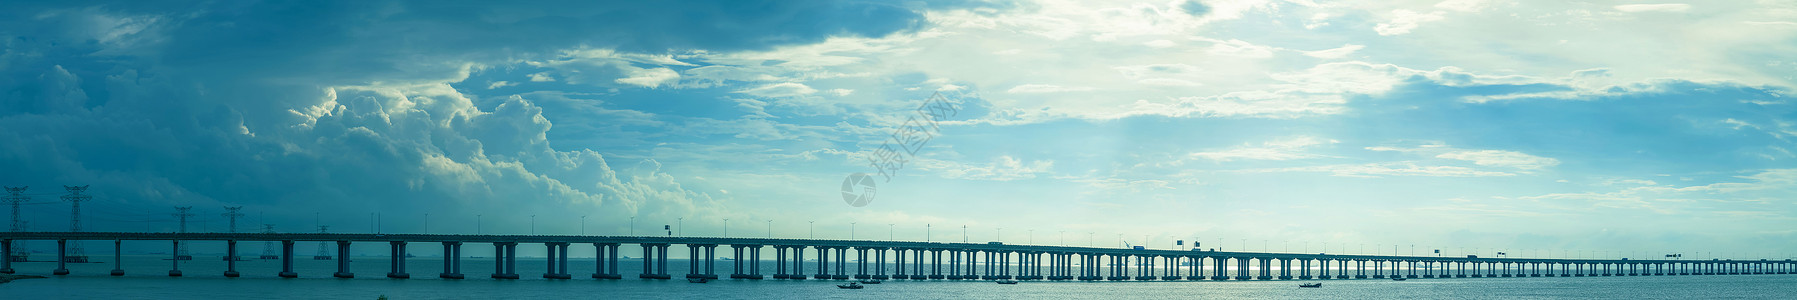 广阔海高速公路跨海大桥背景